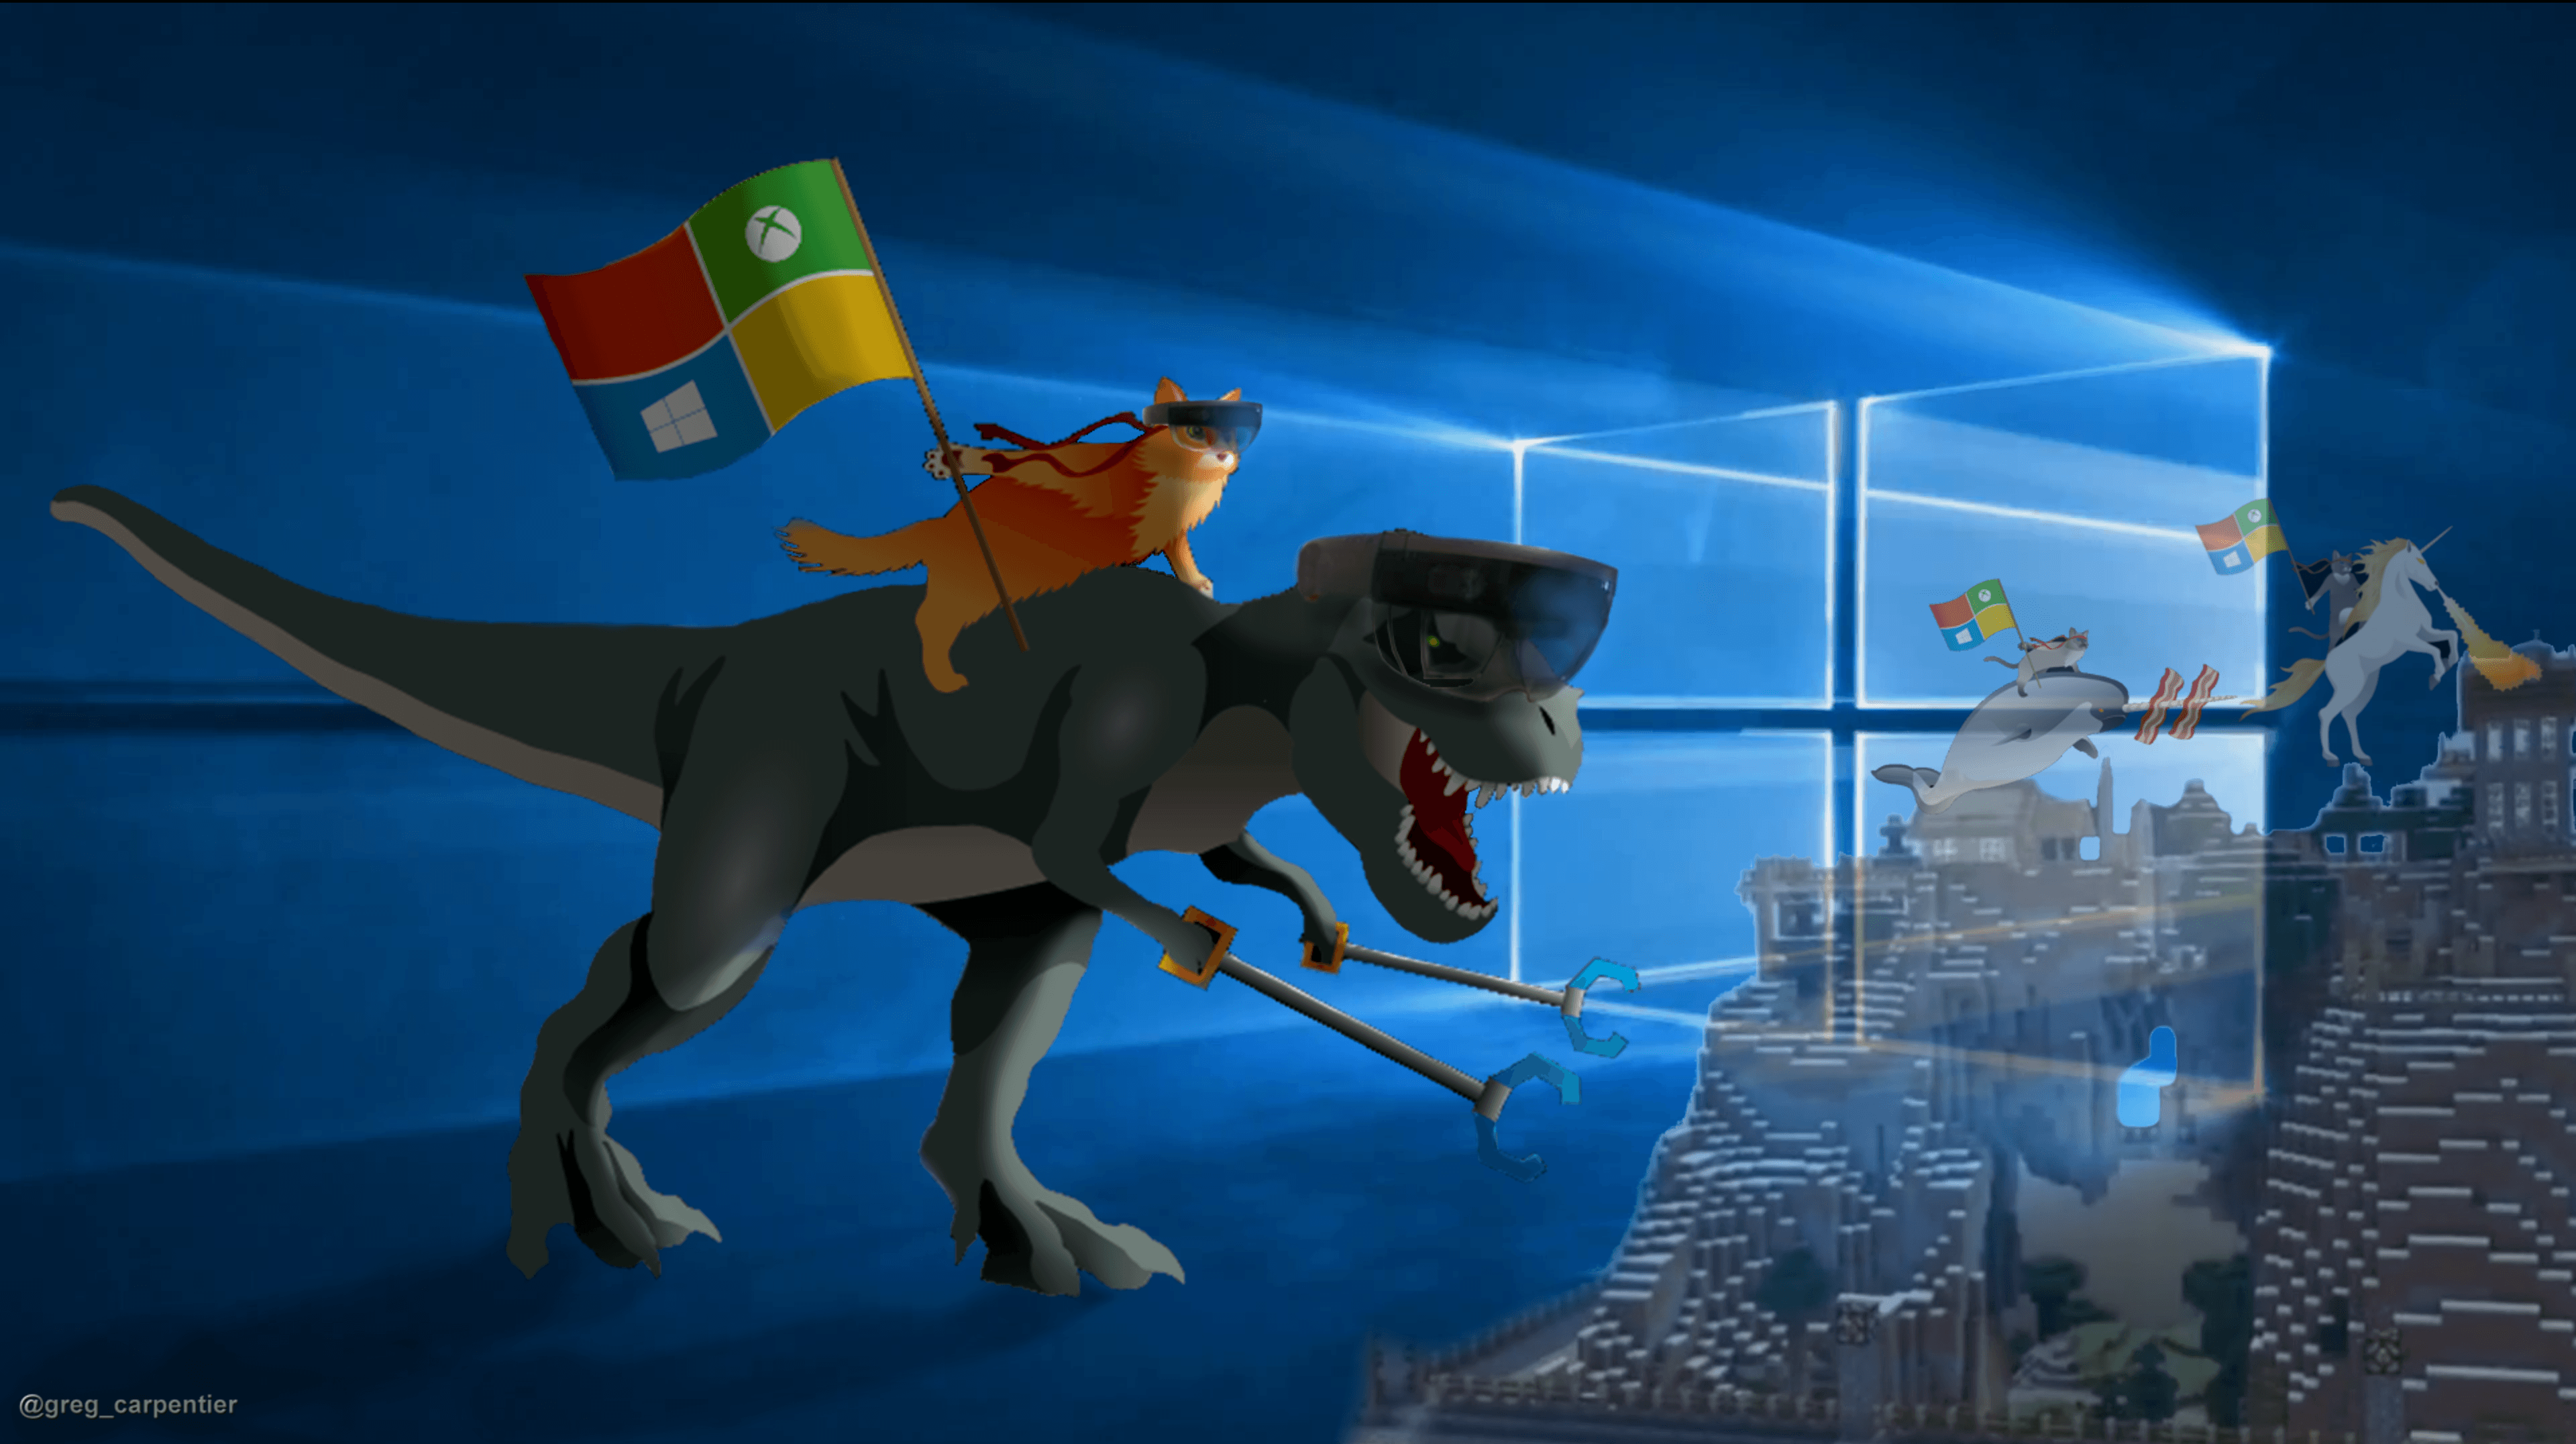 3840x2152 Hình nền mèo Ninja tuyệt vời cho Microsoft Windows 10